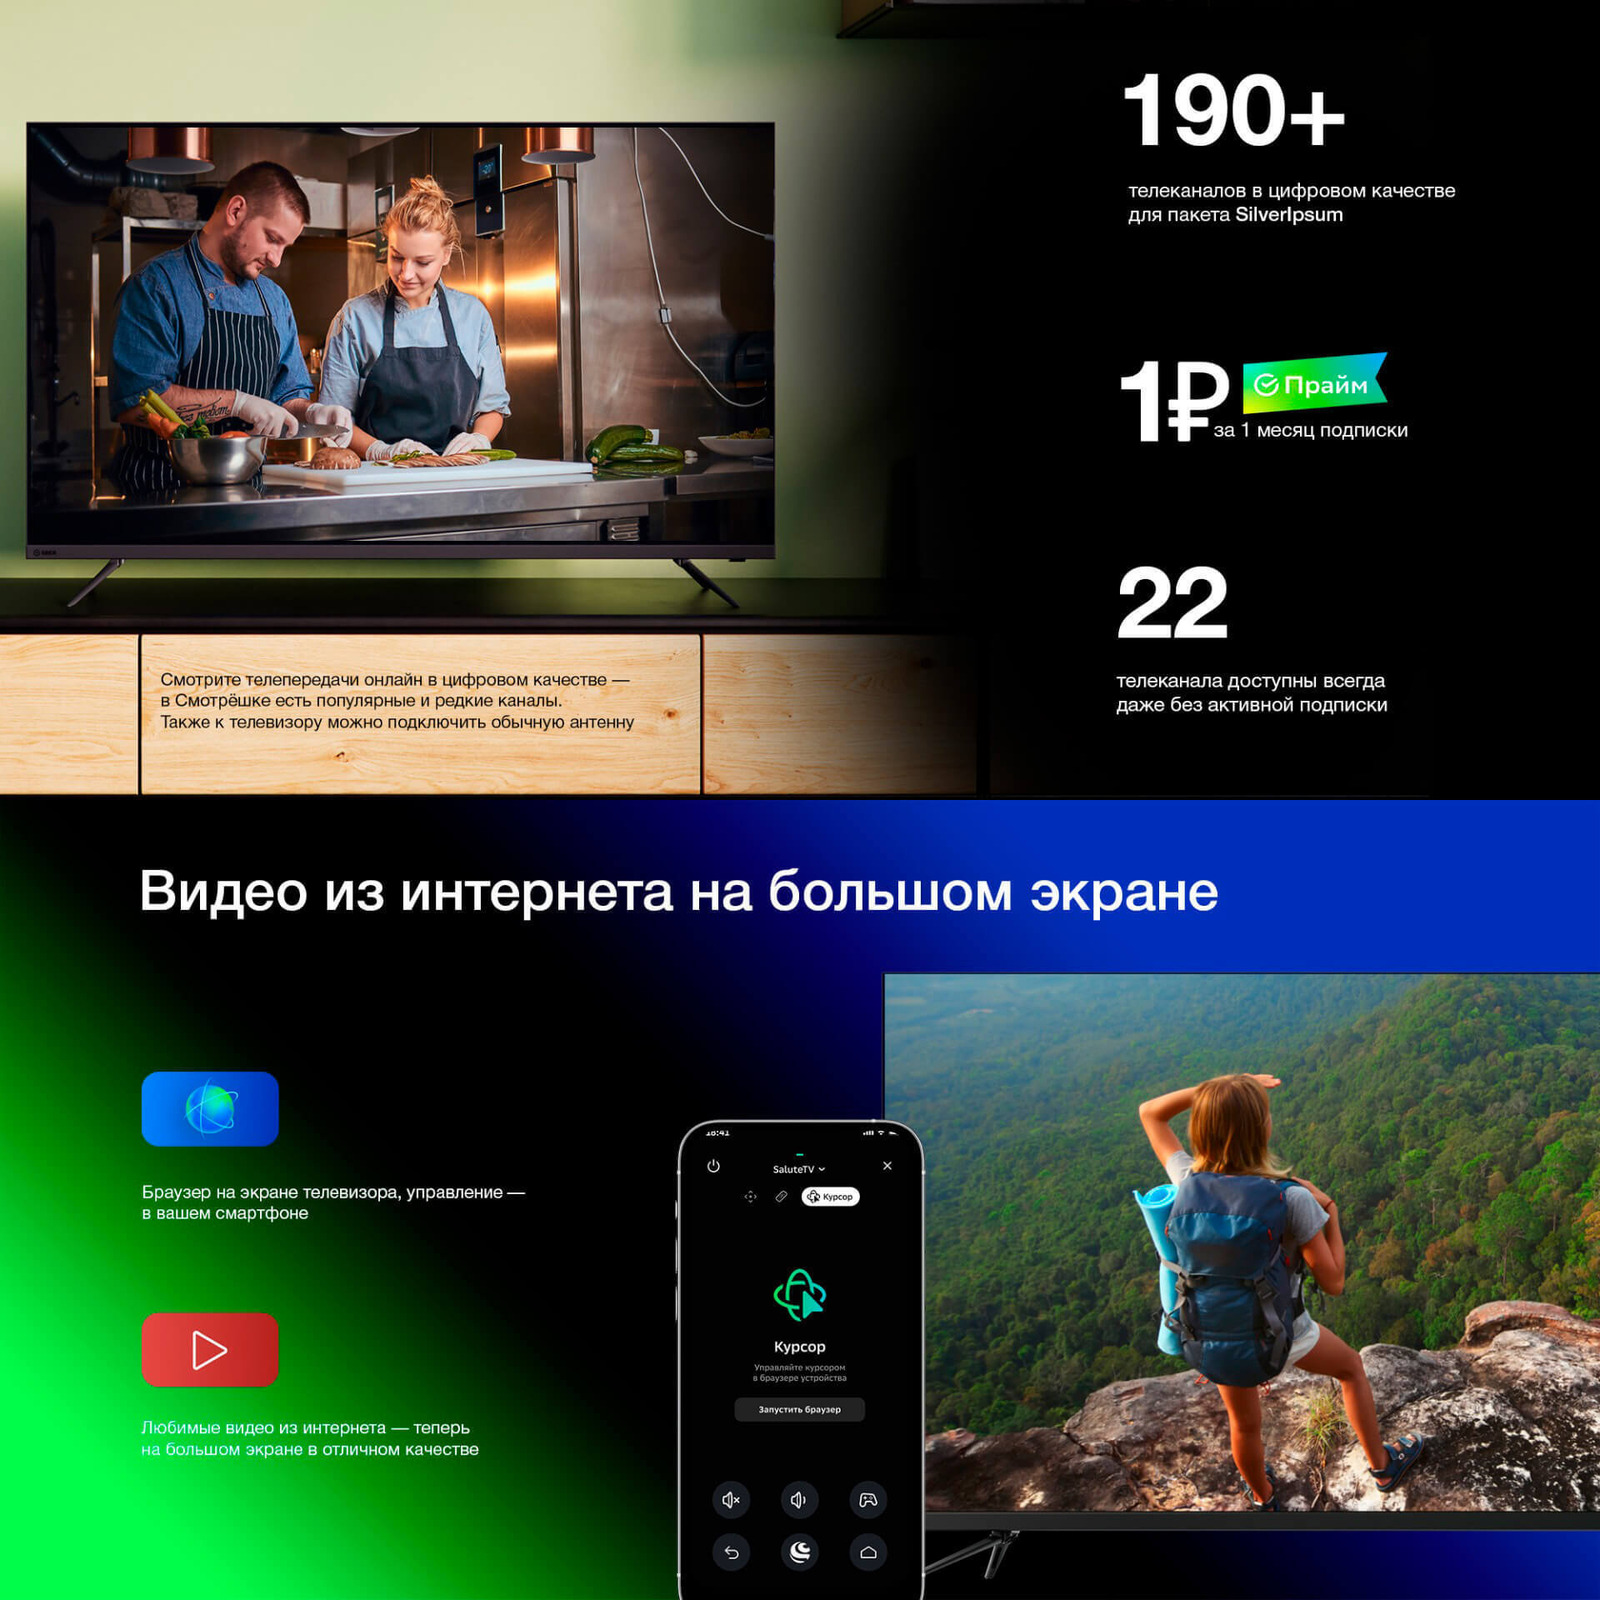 190+ телеканалов в цифровом качестве. 1 рубль за 1 месяц подписки. Видео из интерента на большом экране.